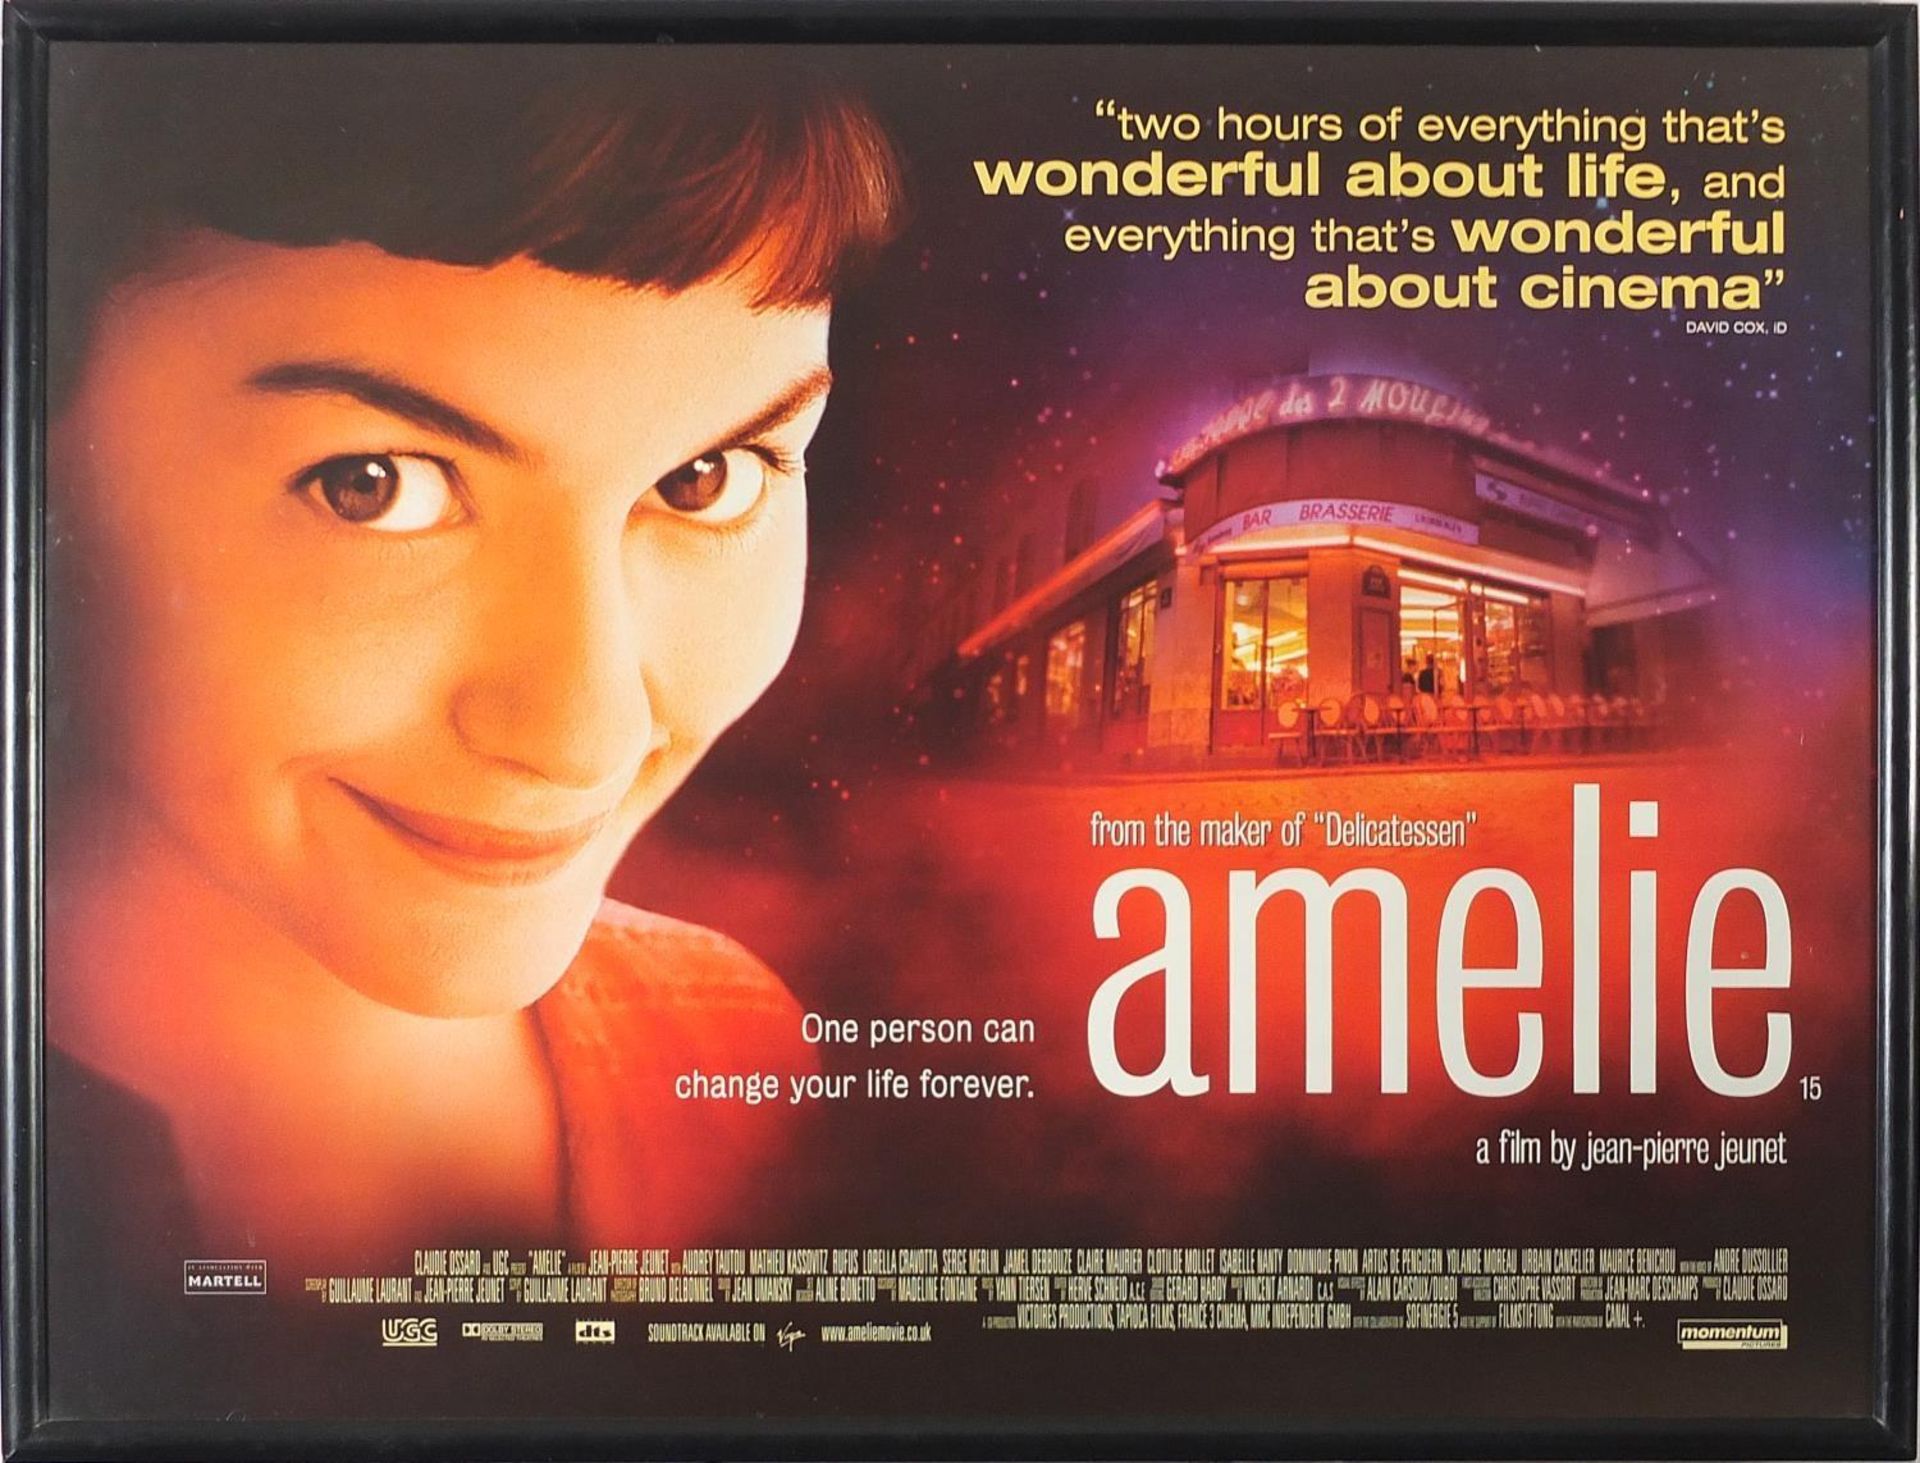 Amelie film poster, framed and glazed, 100.5cm x 75cm excluding the frame - Image 2 of 4